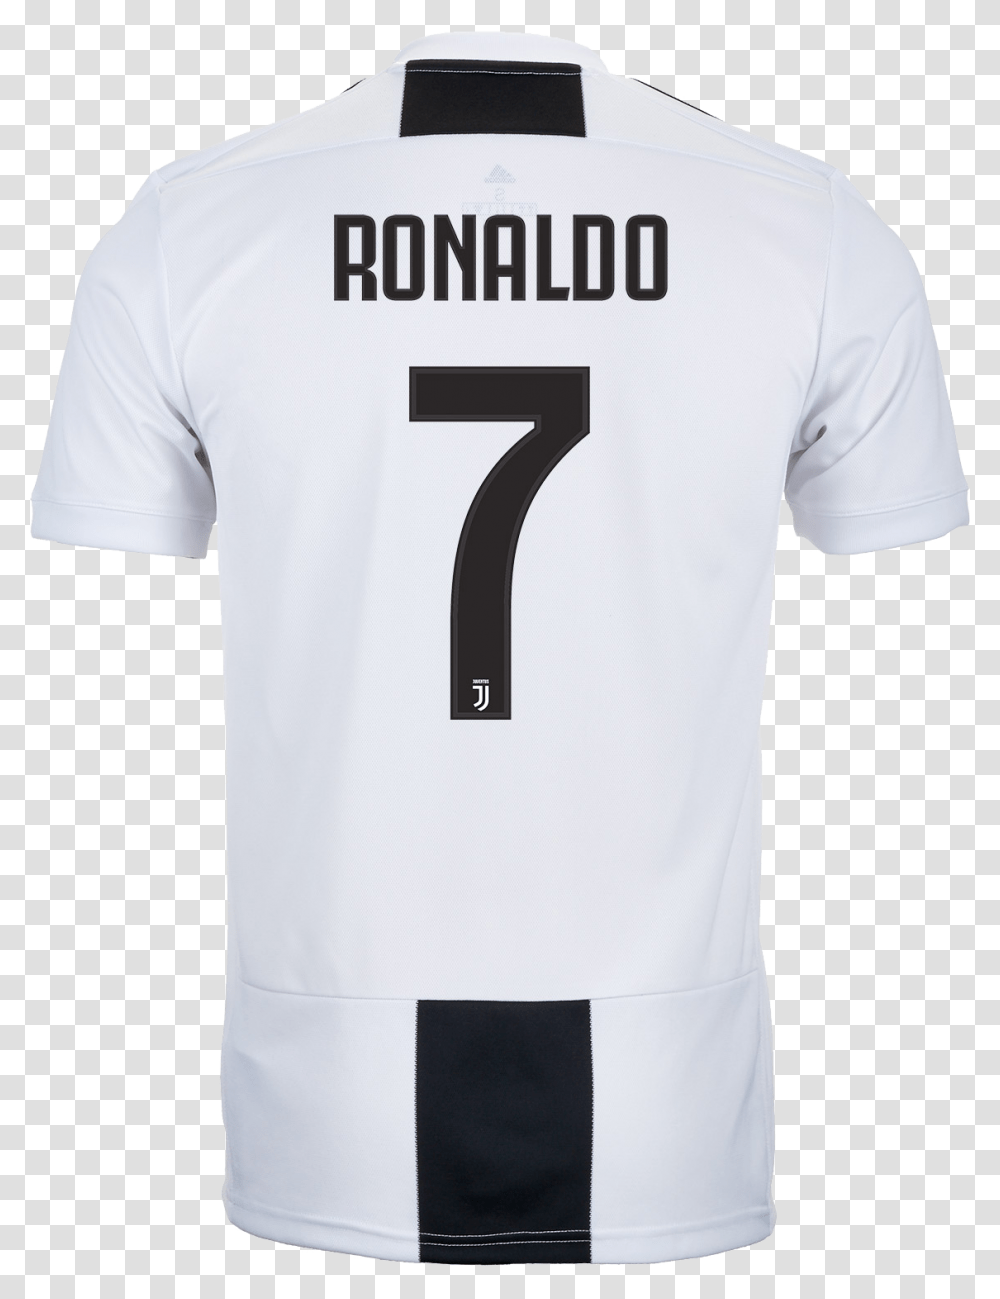 Adidas Cristiano Ronaldo Juventus Jersey Clipart Ronaldo Jersey, Apparel, Shirt Transparent Png